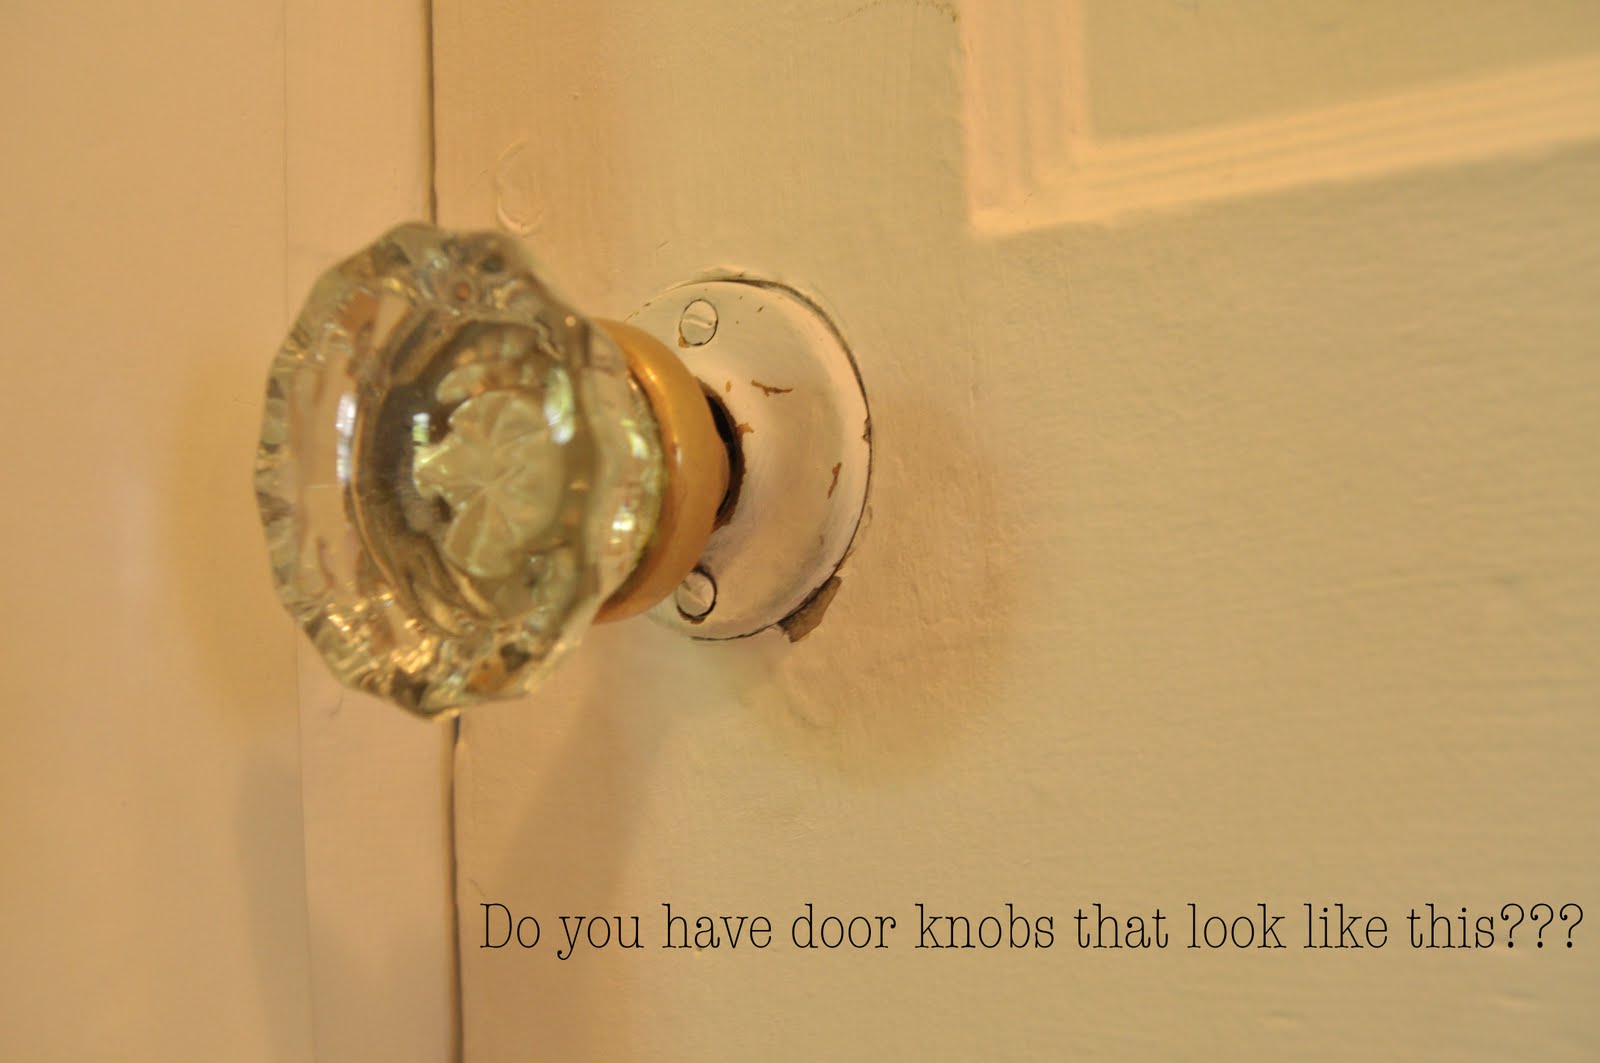 door knobs and broomsticks photo - 1